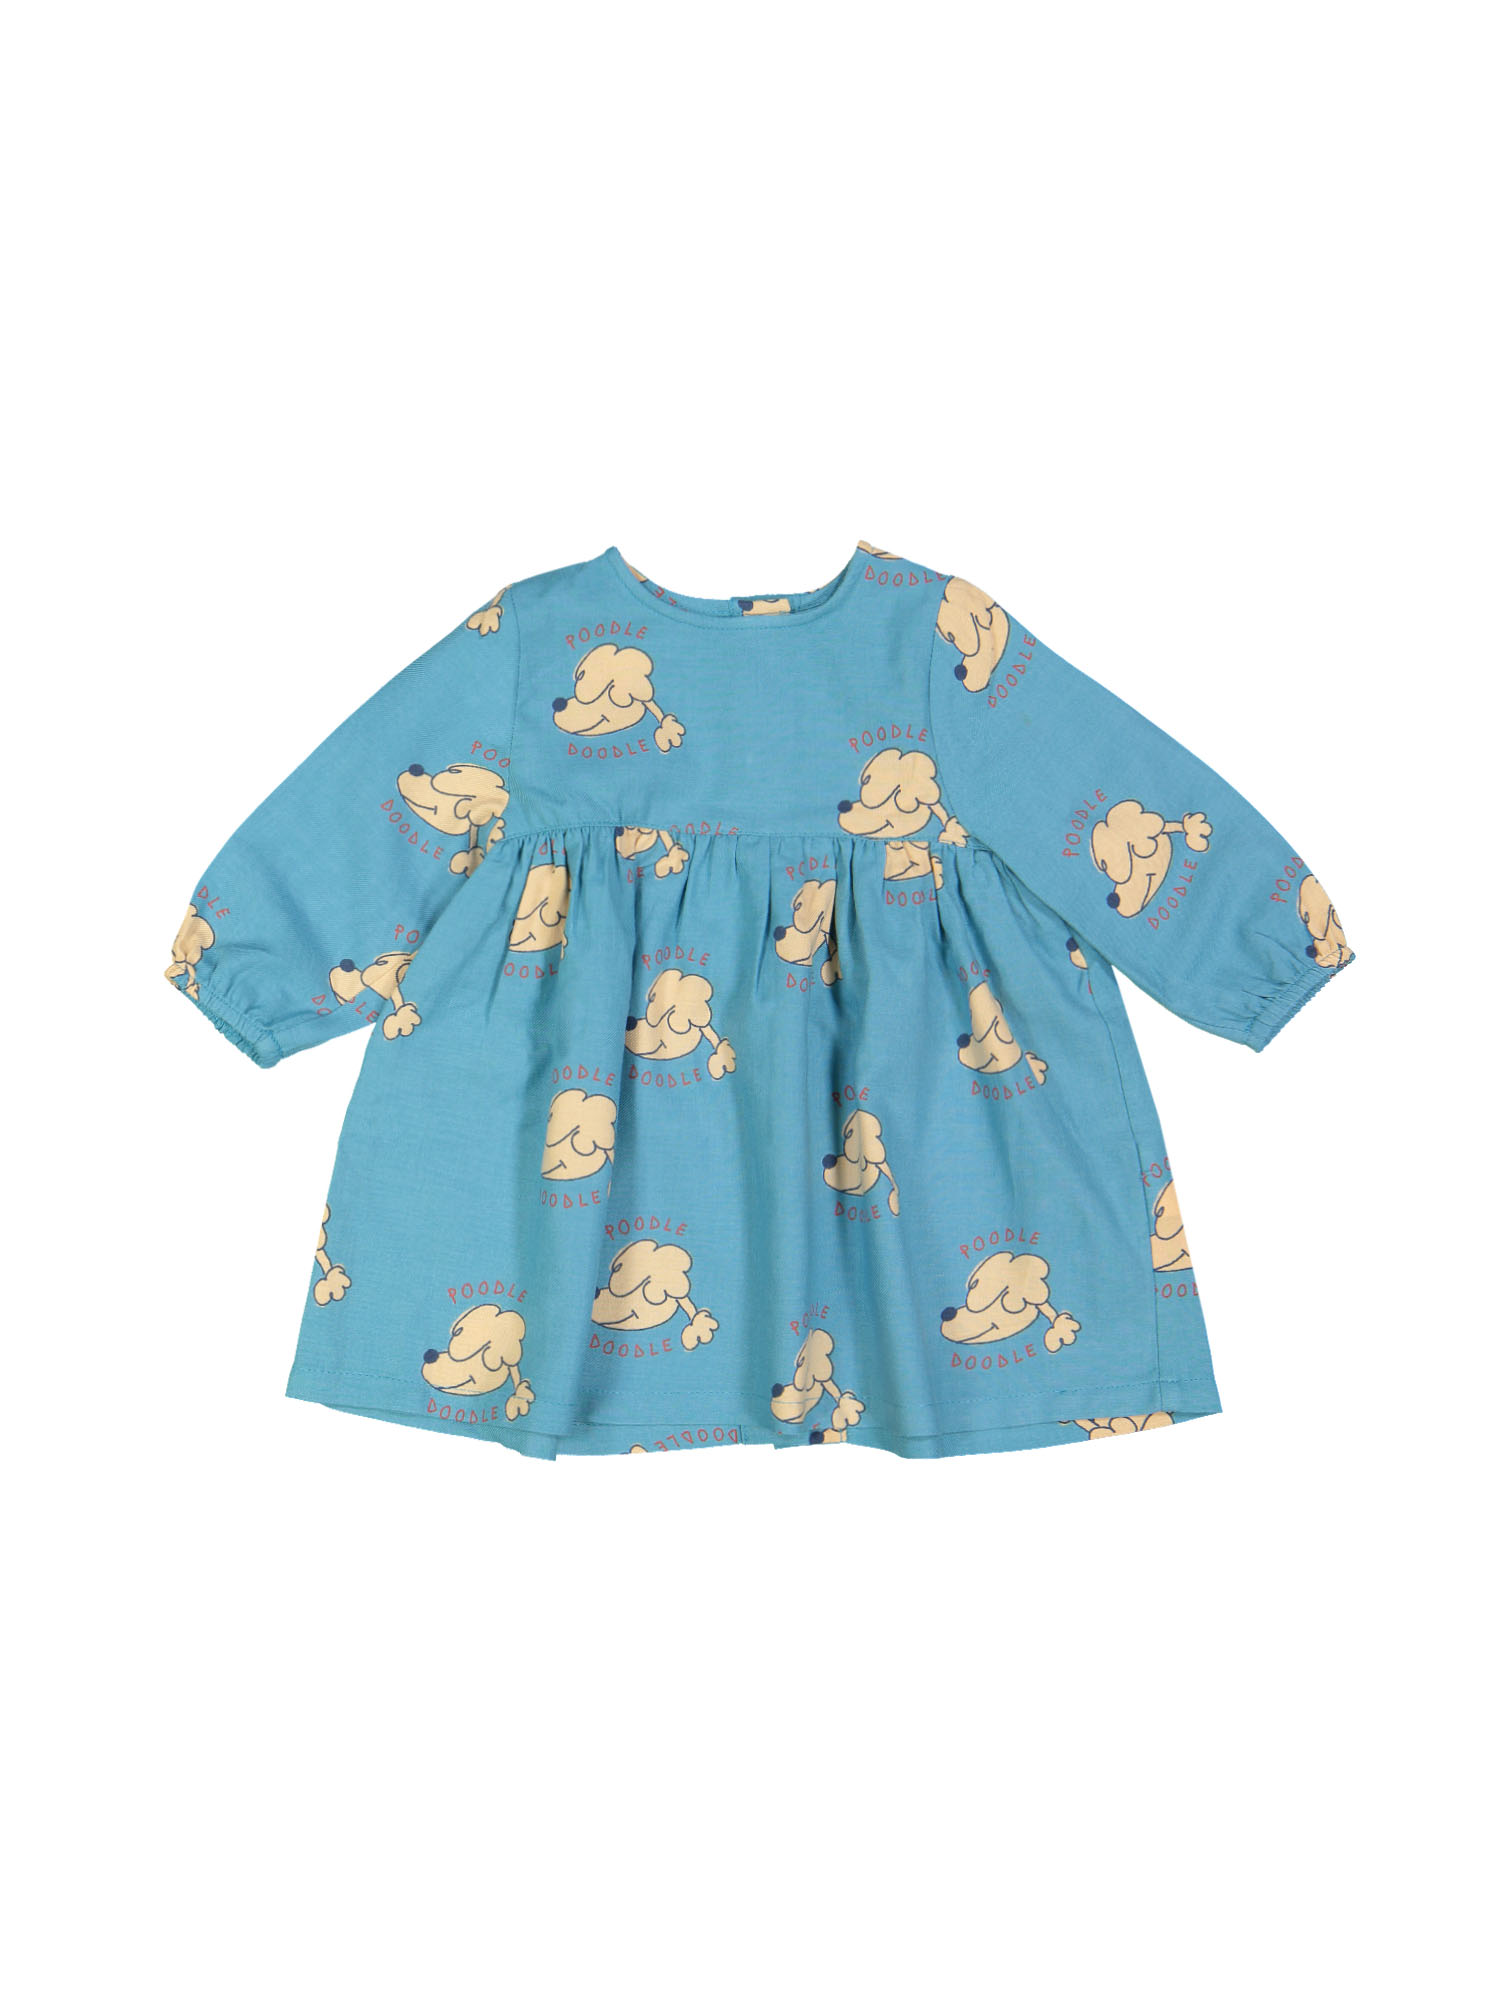 jurk mini poodle doodle blauw 09m